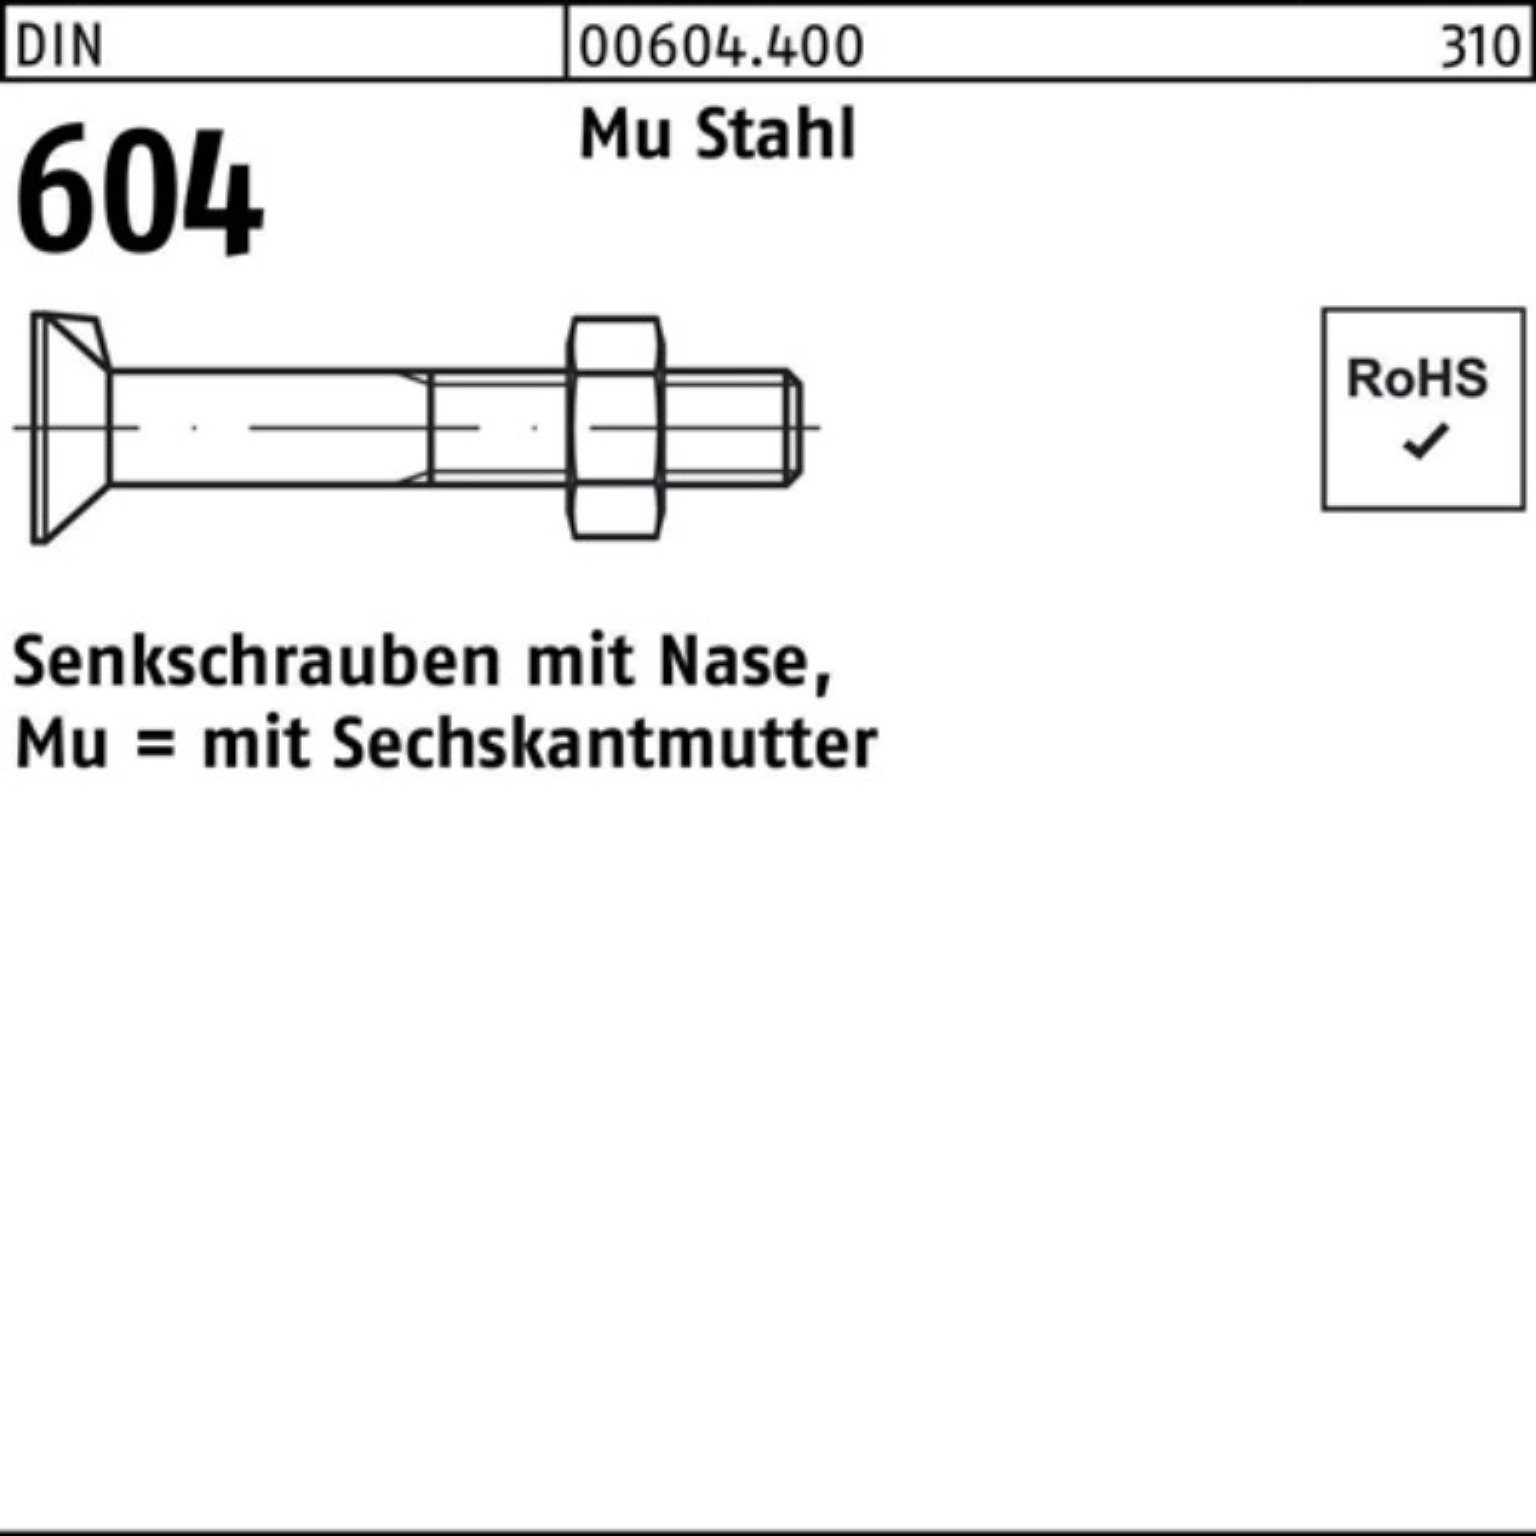 Reyher Senkschraube 100er Pack Senkschraube Mu 4.6 604 Nase/6-ktmutter Stahl DIN M16x 110